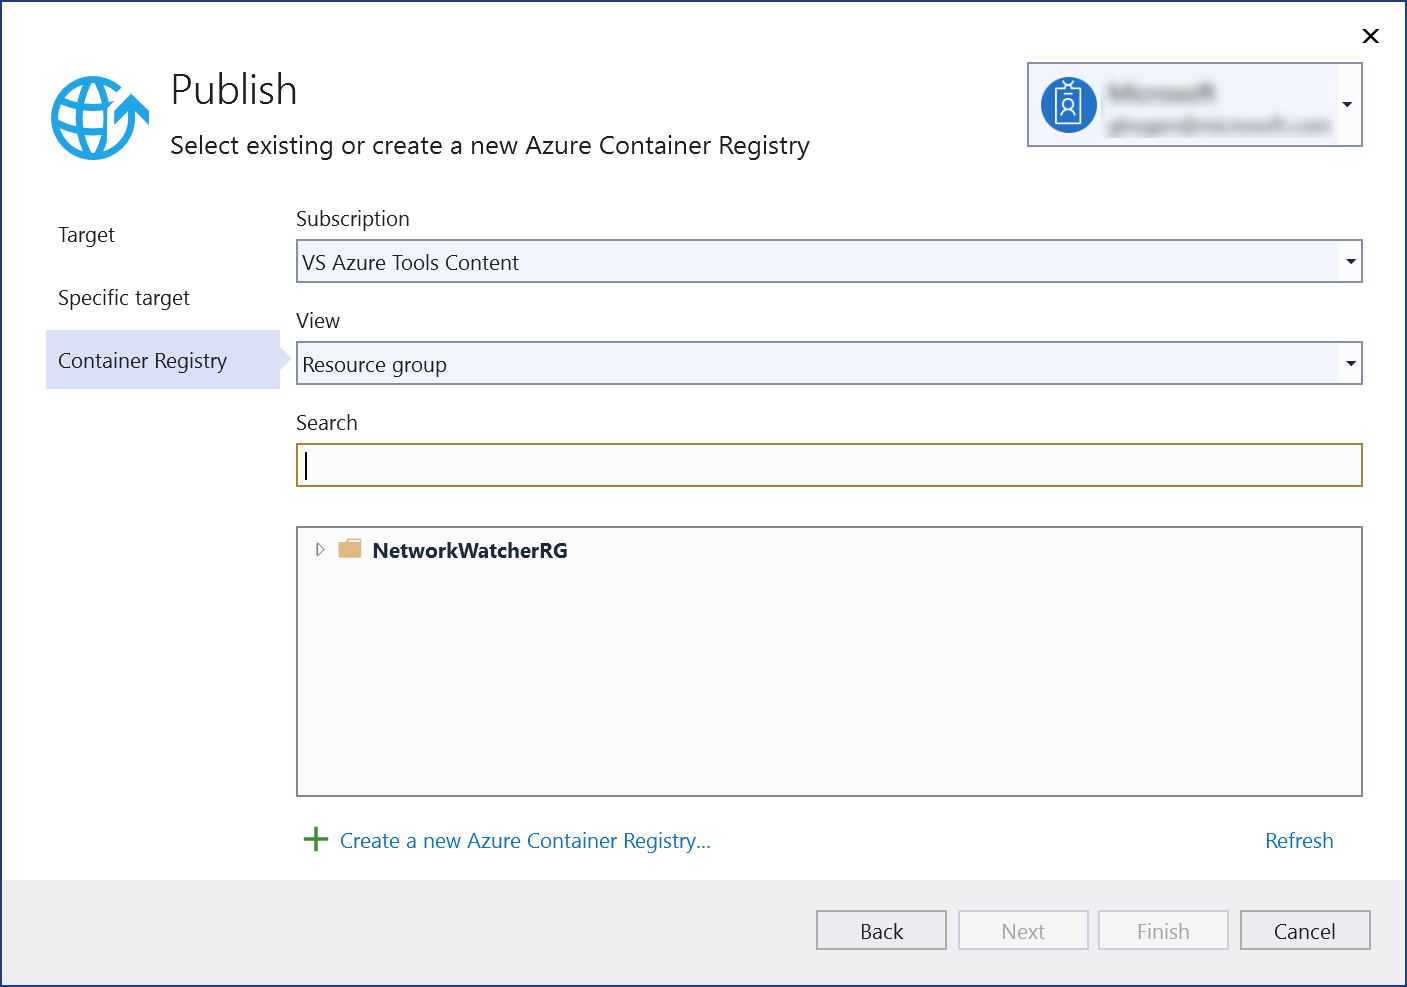 Captura de tela da caixa de diálogo Publicar – escolha Criar um Registro de Contêiner do Azure.